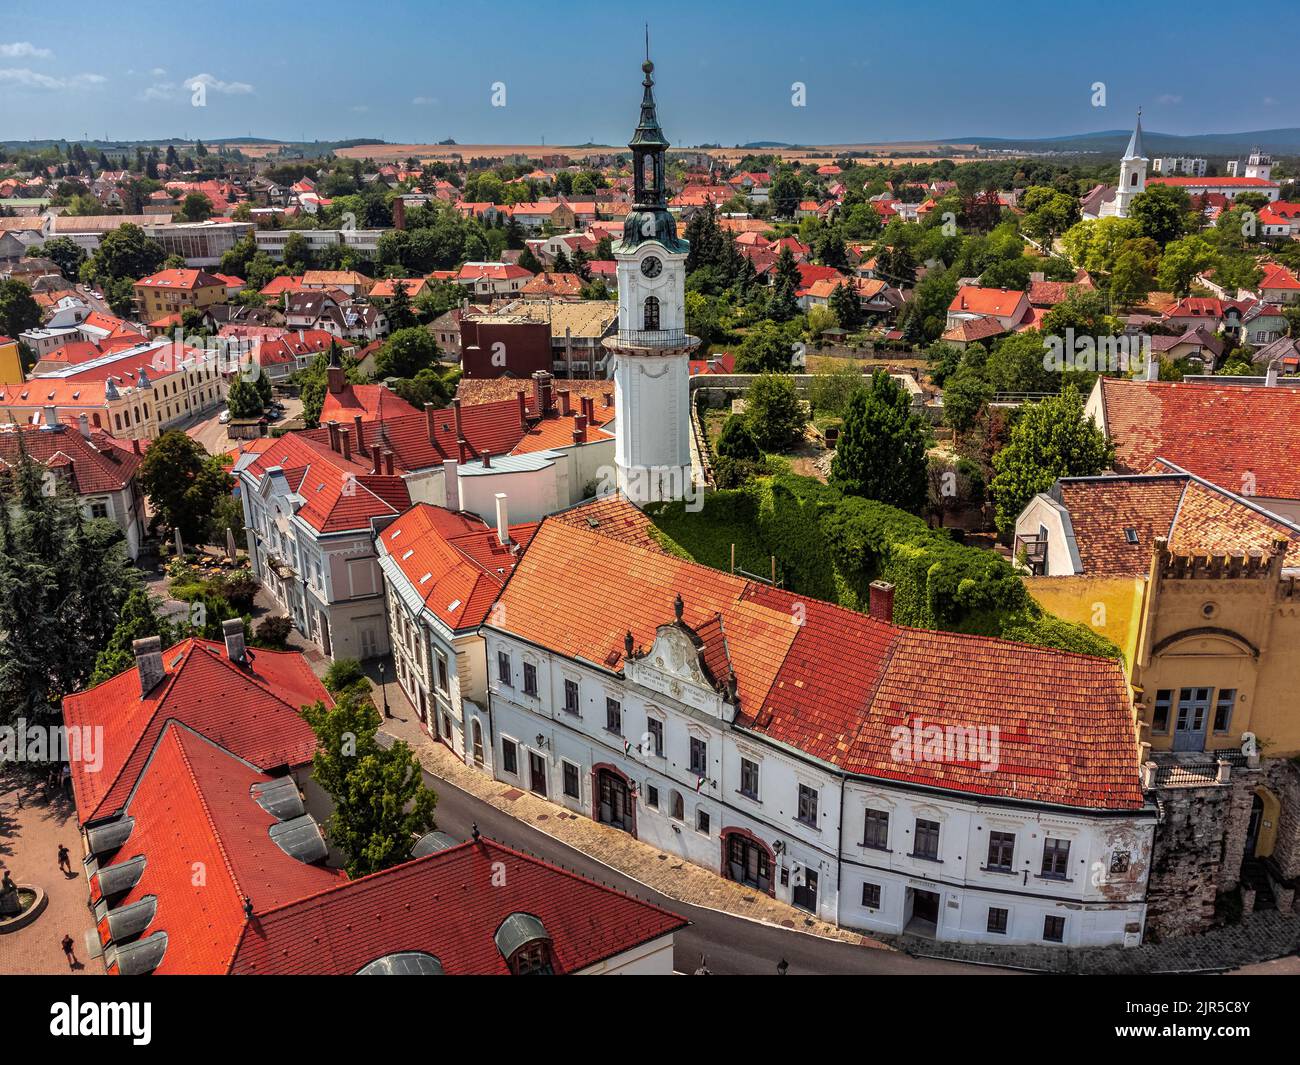 Veszprem, Ungarn - Luftaufnahme des Burgviertels von Veszprem mit mittelalterlichen Gebäuden und Feuerwache Turm am Ovaros Platz auf einem hellen Sommer da Stockfoto